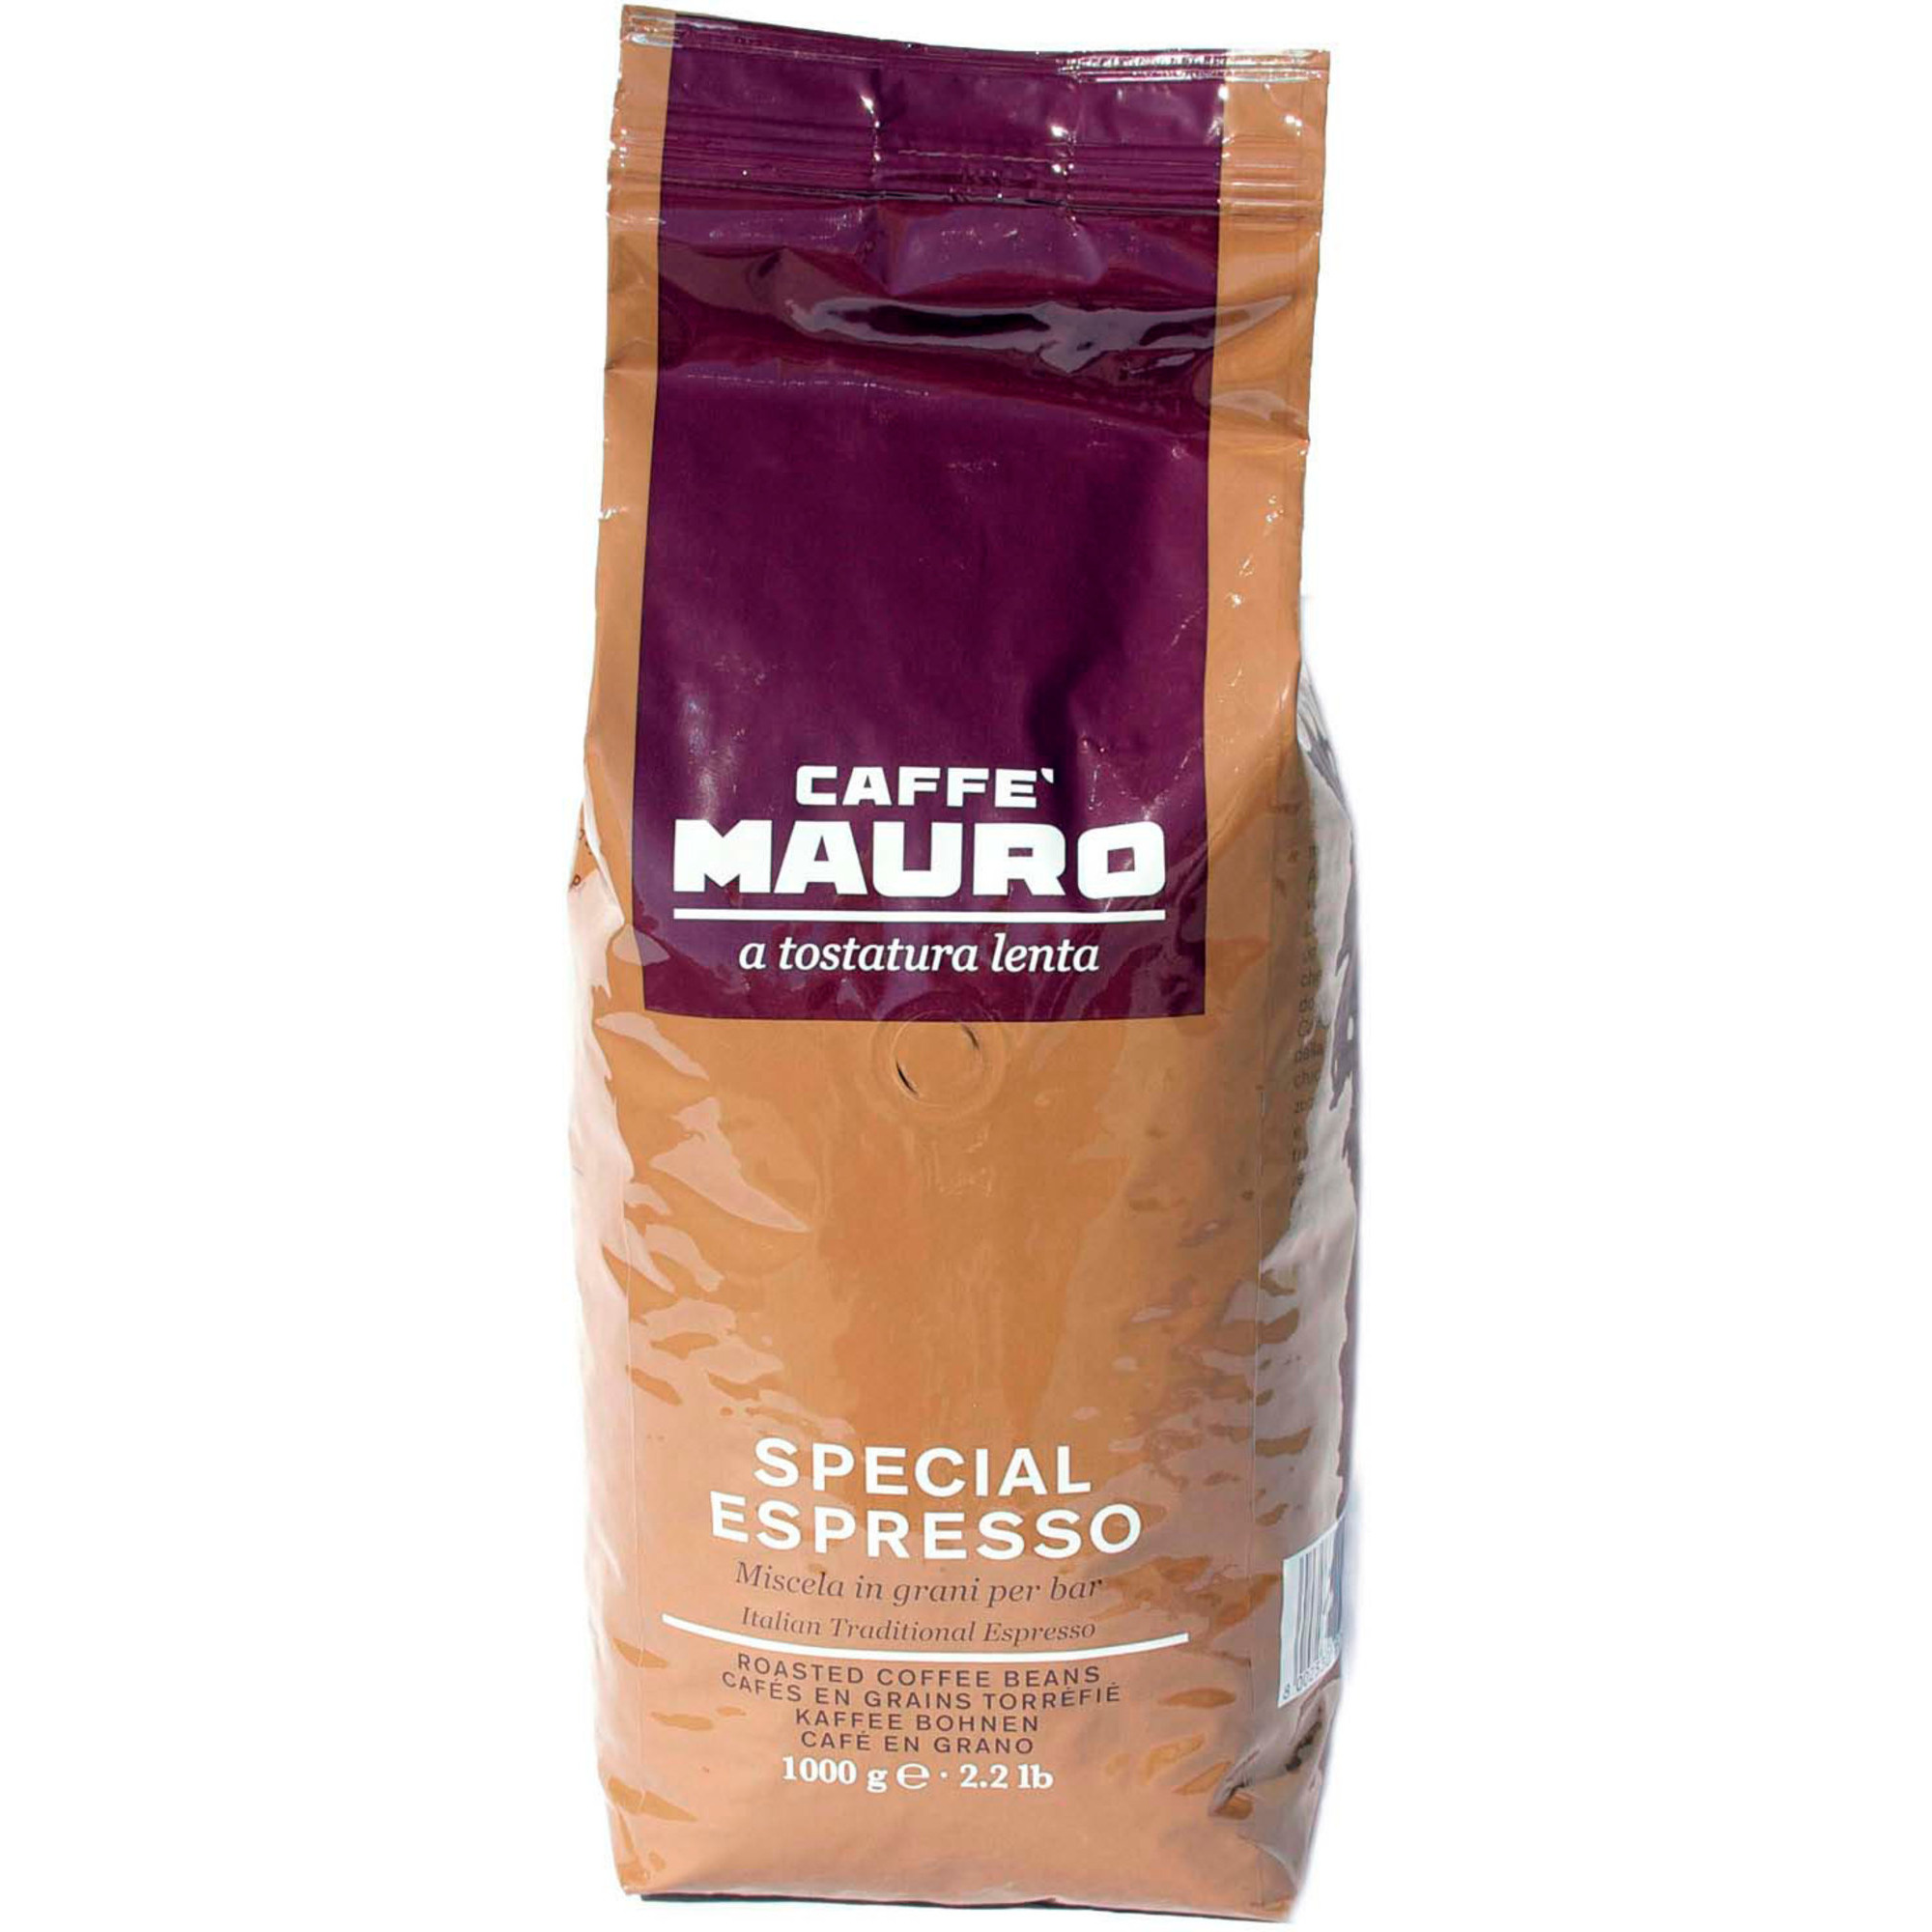 Caffè Mauro Special Espresso 1 kg.